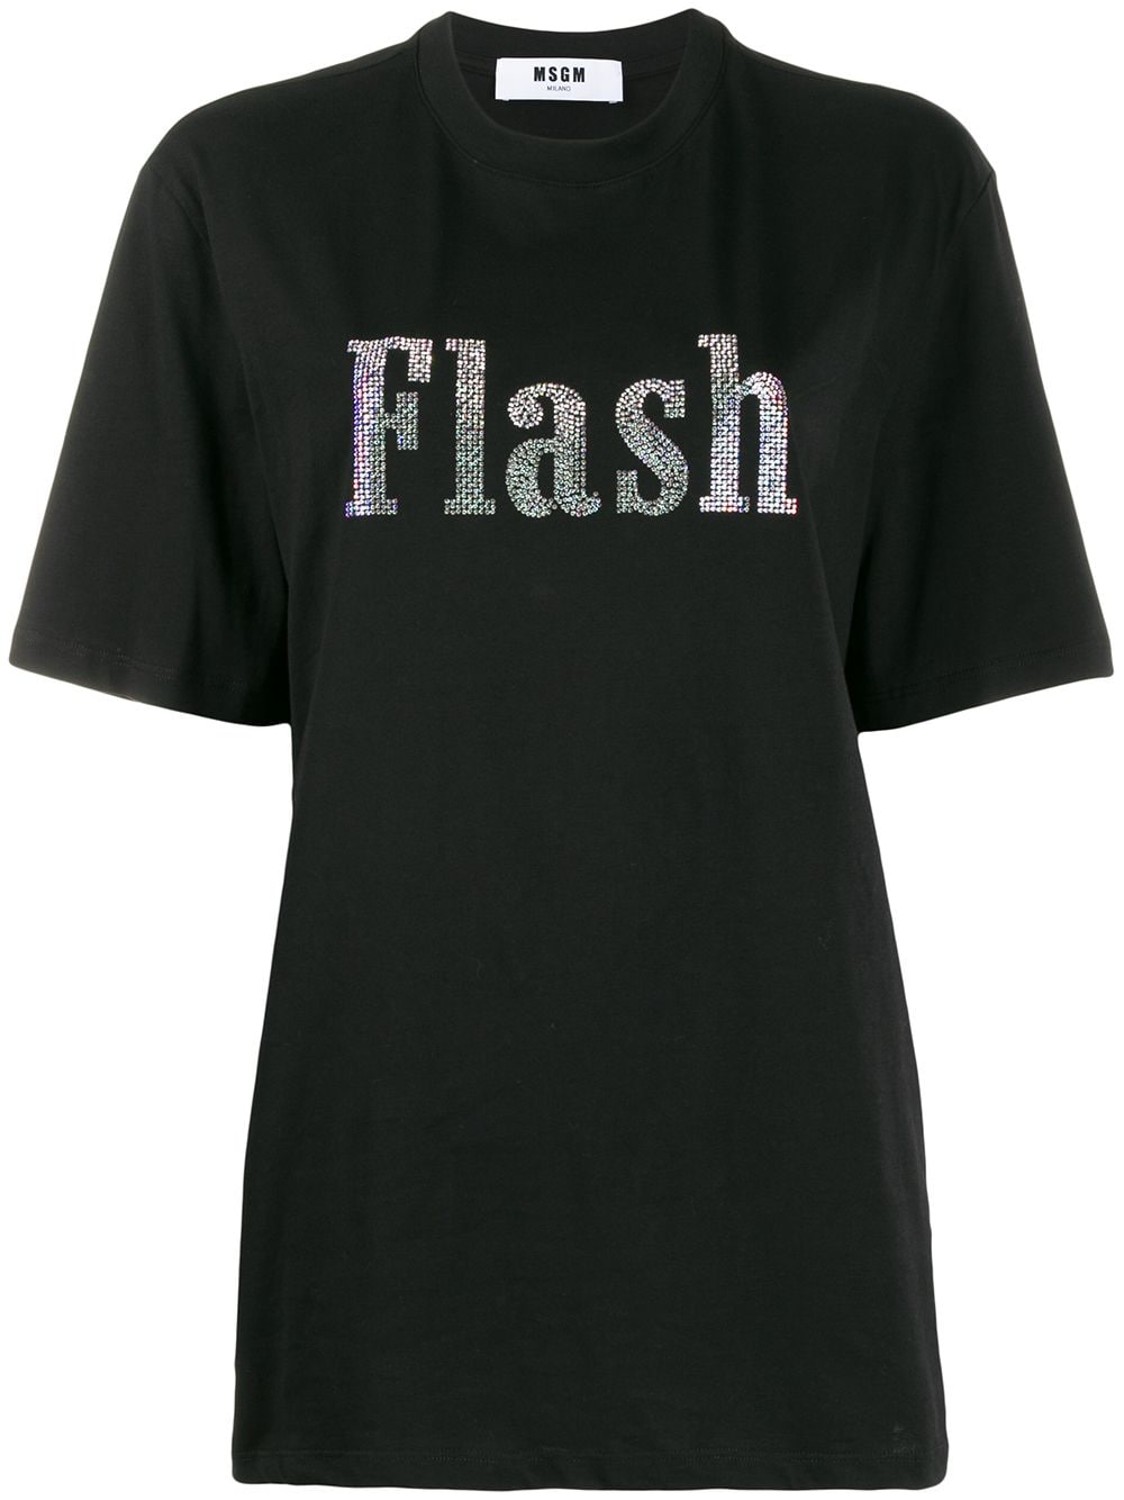 shop MSGM Saldi T-shirts: T-shirt MSGM, classico fit, manica corta, girocollo, nera, scritta " Flash" in swarovski.

Composizione: 100% cotone. number 1588